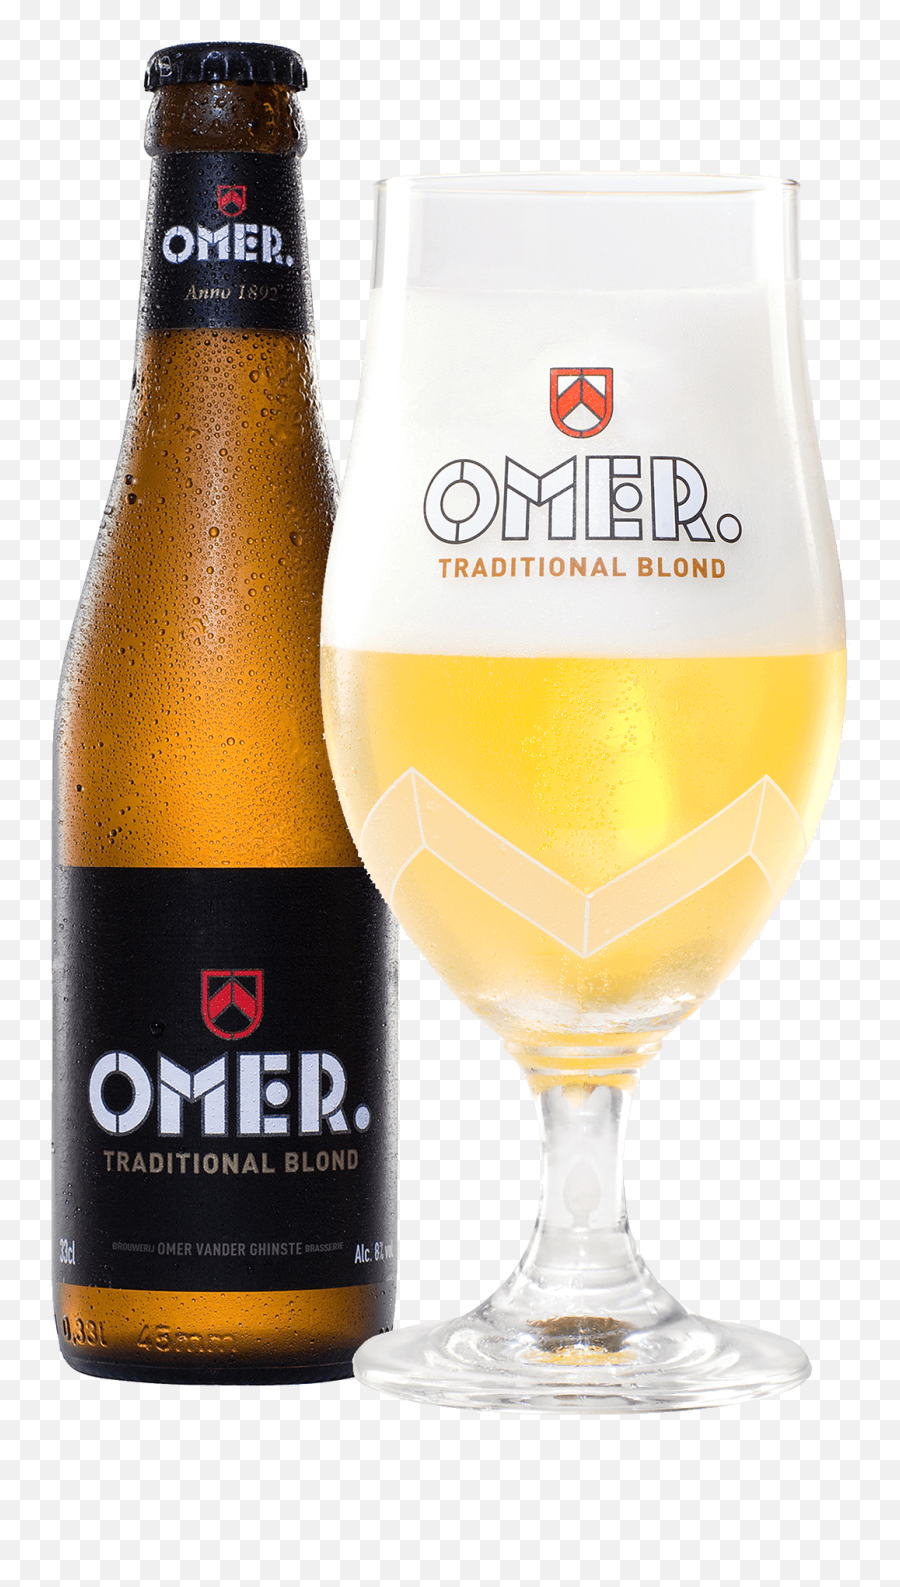 Omer Traditional Blond - Omer Vander Ghinste Omer Traditional Blond Brouwerij Bockor Nv Png,Beer Bottles Png